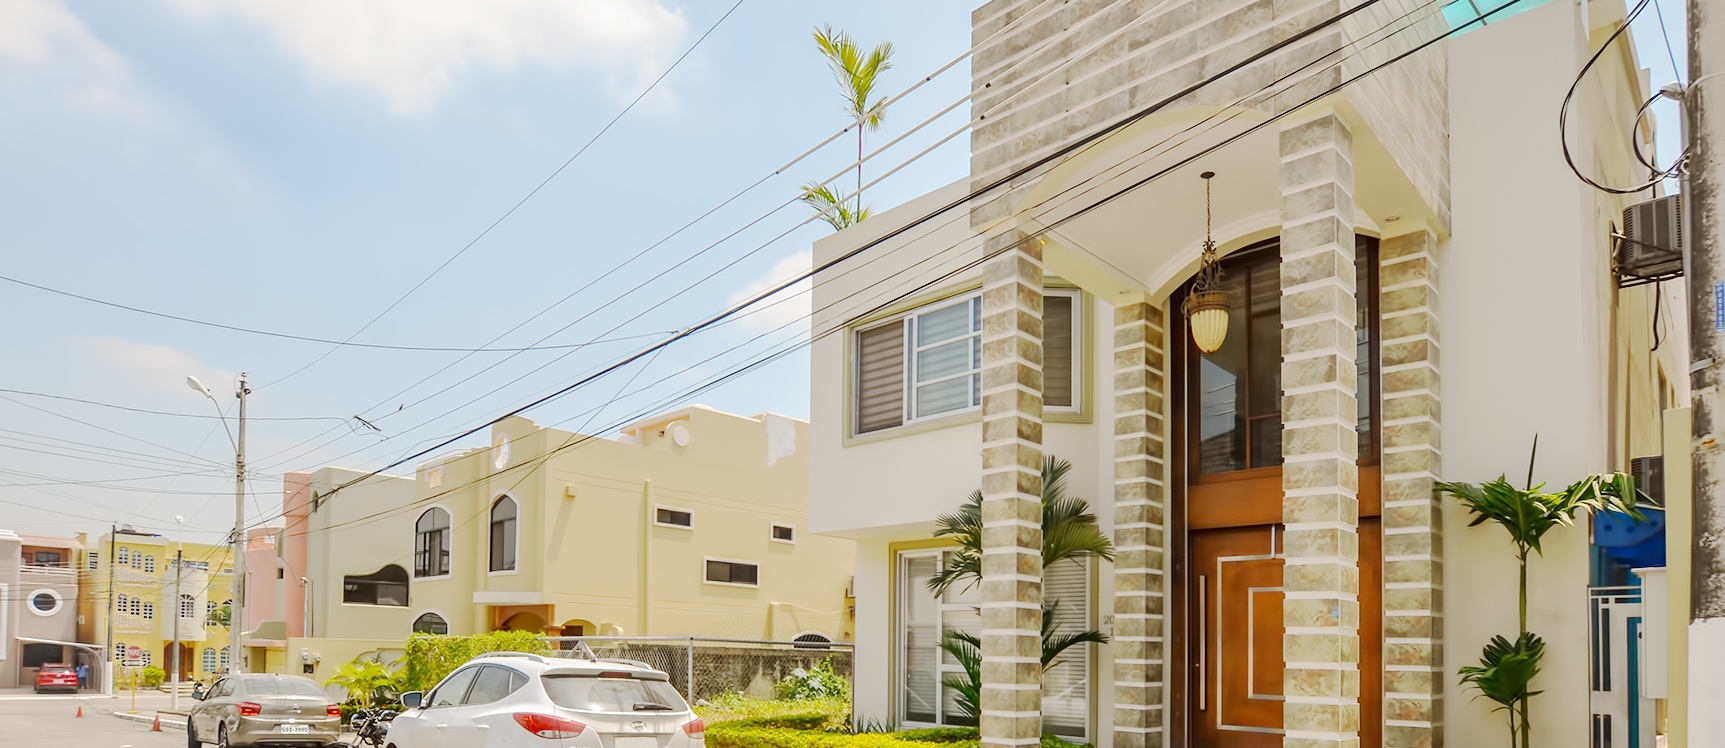 GeoBienes - Casa en venta en Goleta Alcance norte de Guayaquil - Plusvalia Guayaquil Casas de venta y alquiler Inmobiliaria Ecuador